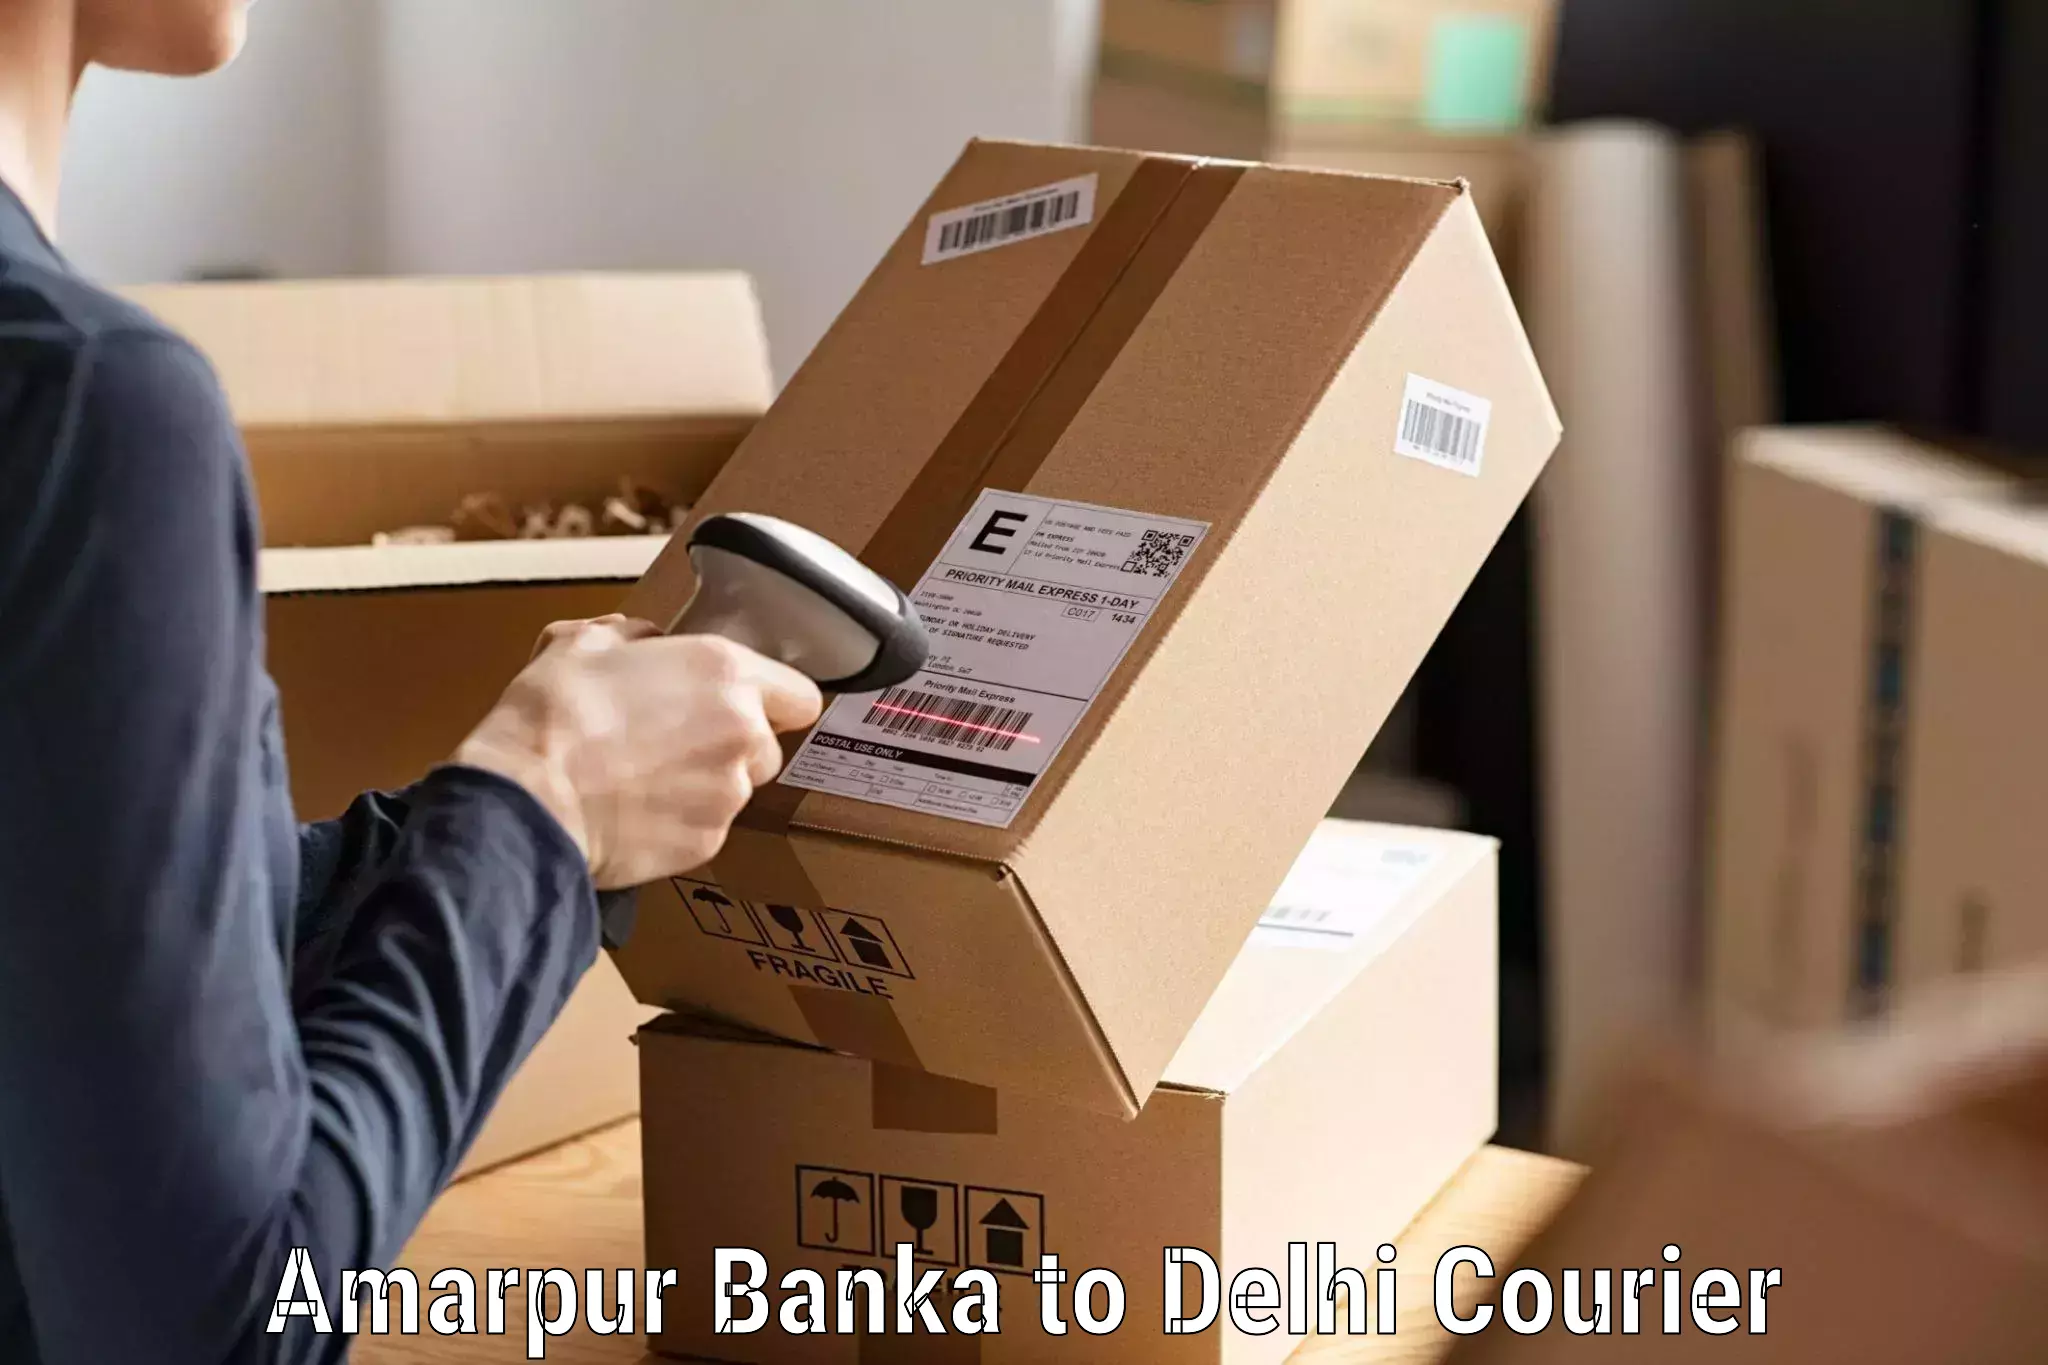 Express logistics service Amarpur Banka to Delhi